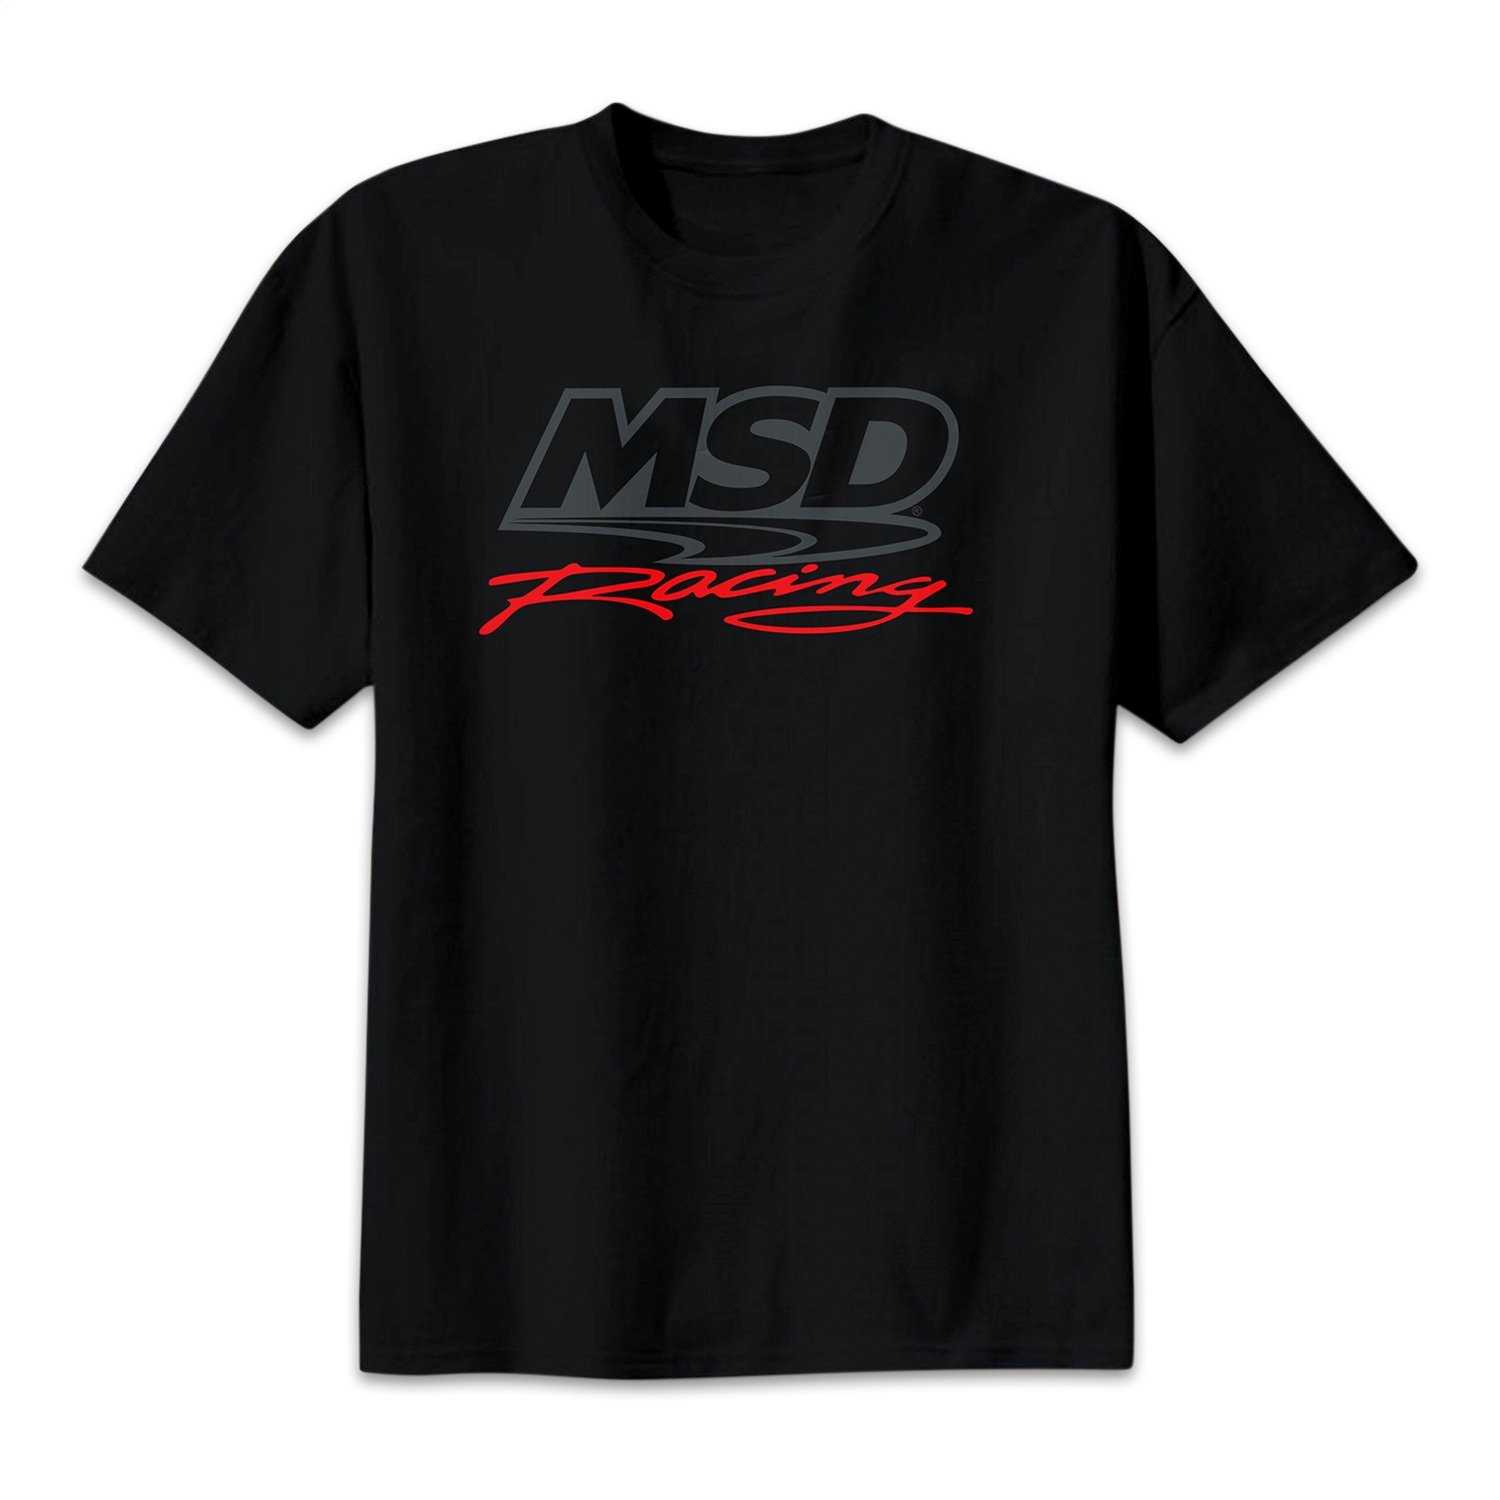 MSD Racing T-Shirt X-Large Black